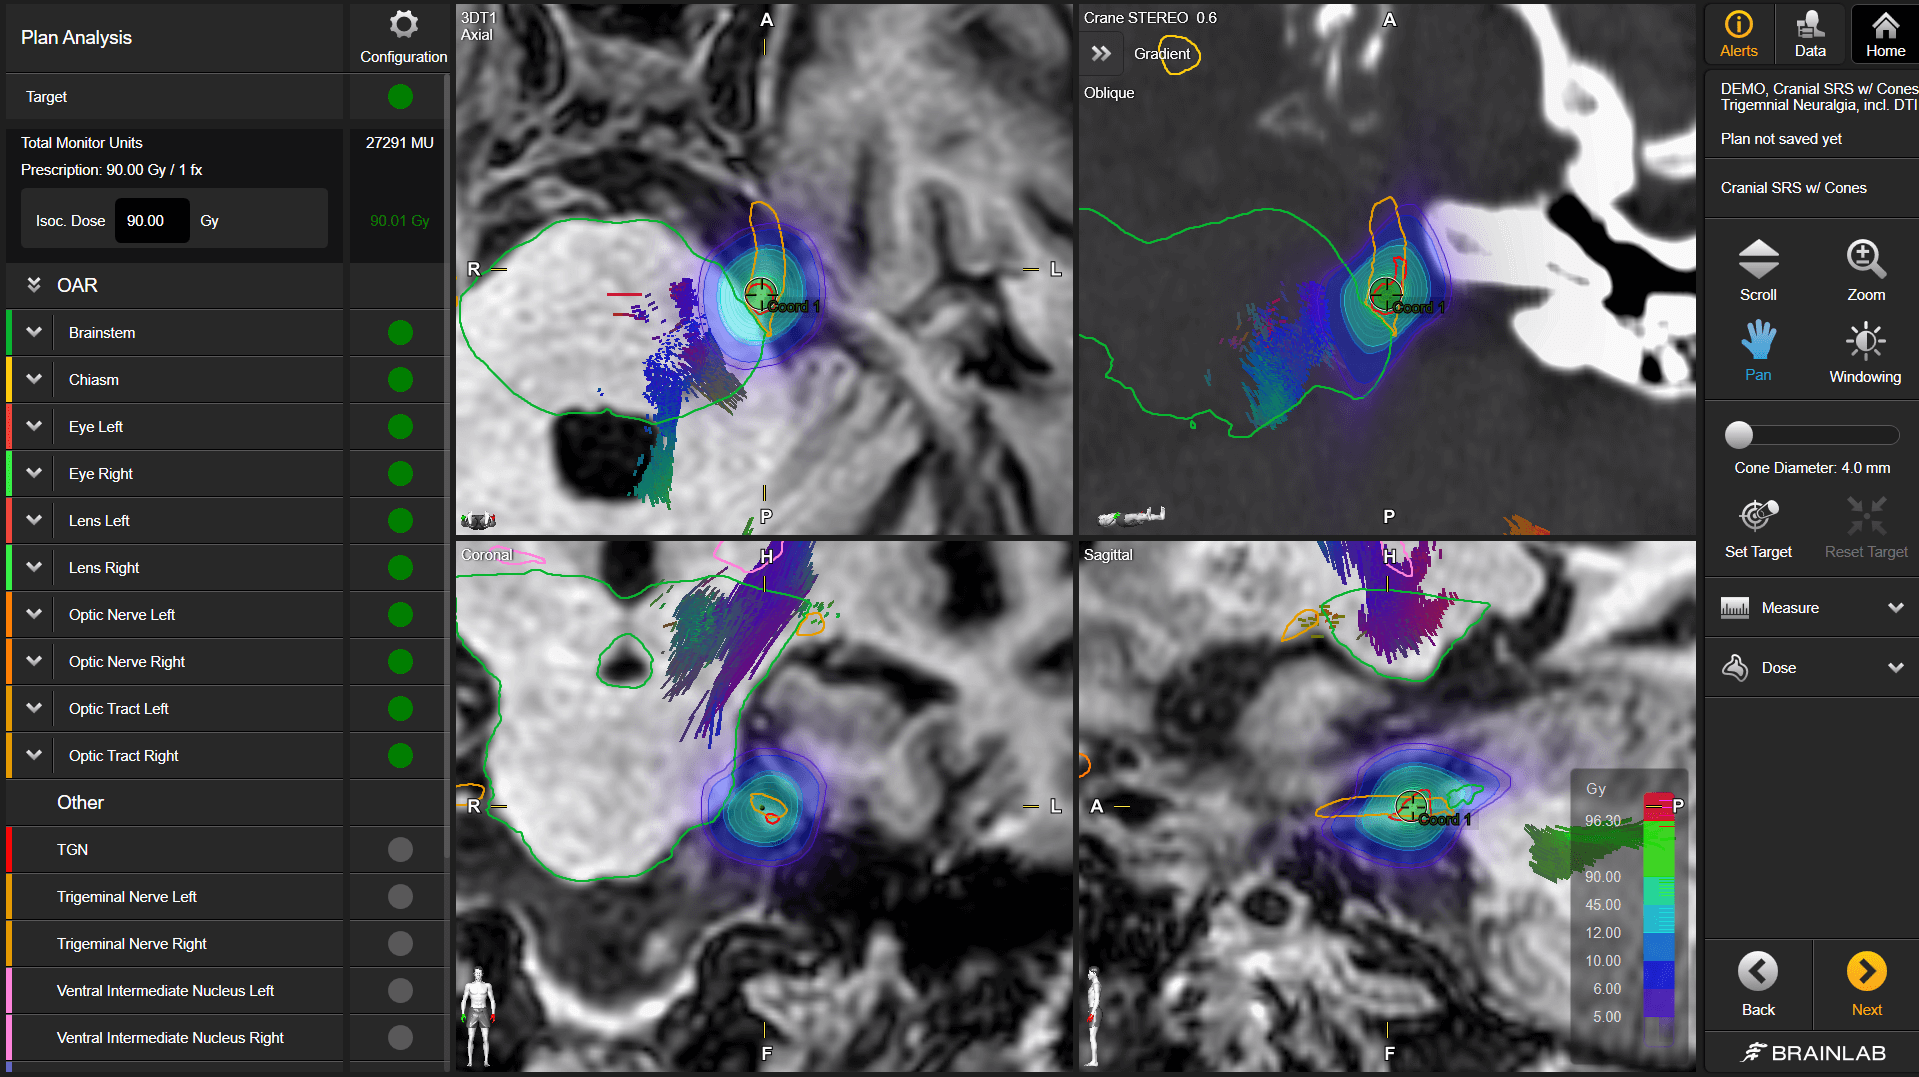 Tela do software Fibertracking mostrando uma aquisição do cérebro em preto e branco e de tratos fibrosos em cores, usada para otimizar o planejamento do tratamento radioterápico.